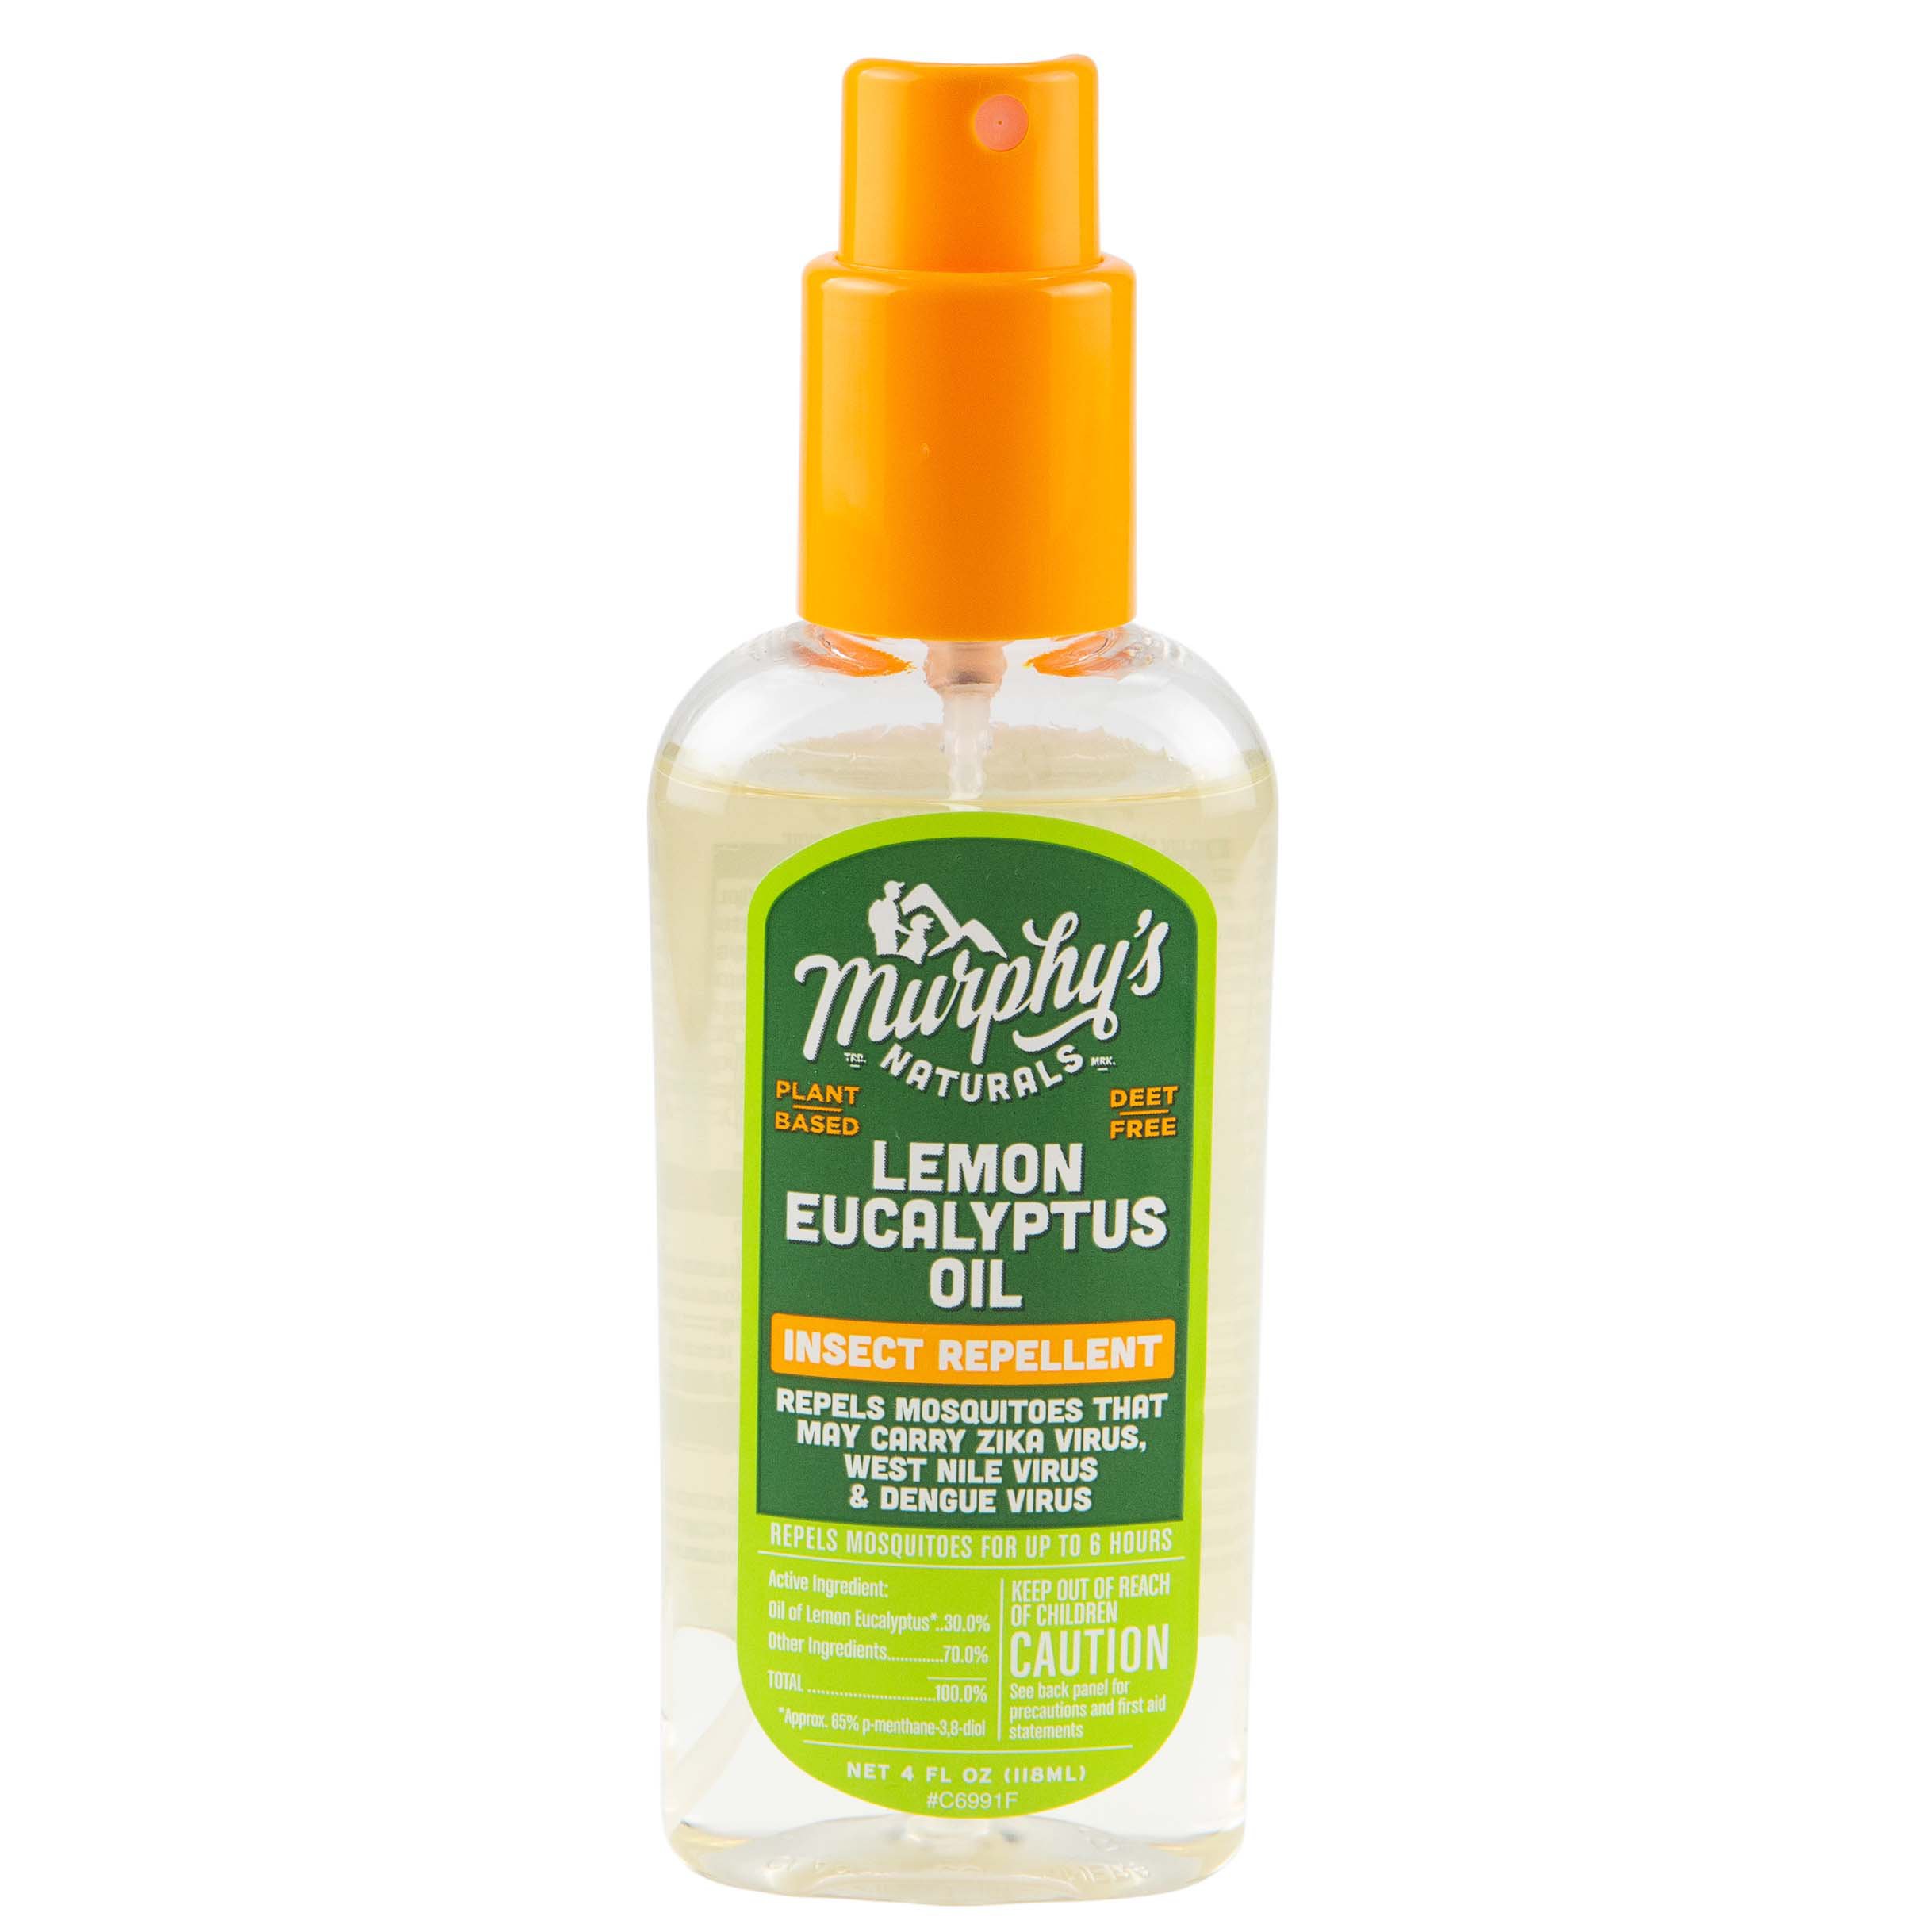 Murphy's Naturals Lemon Eucalyptus Oil Insect Repellent – DEET Free ...